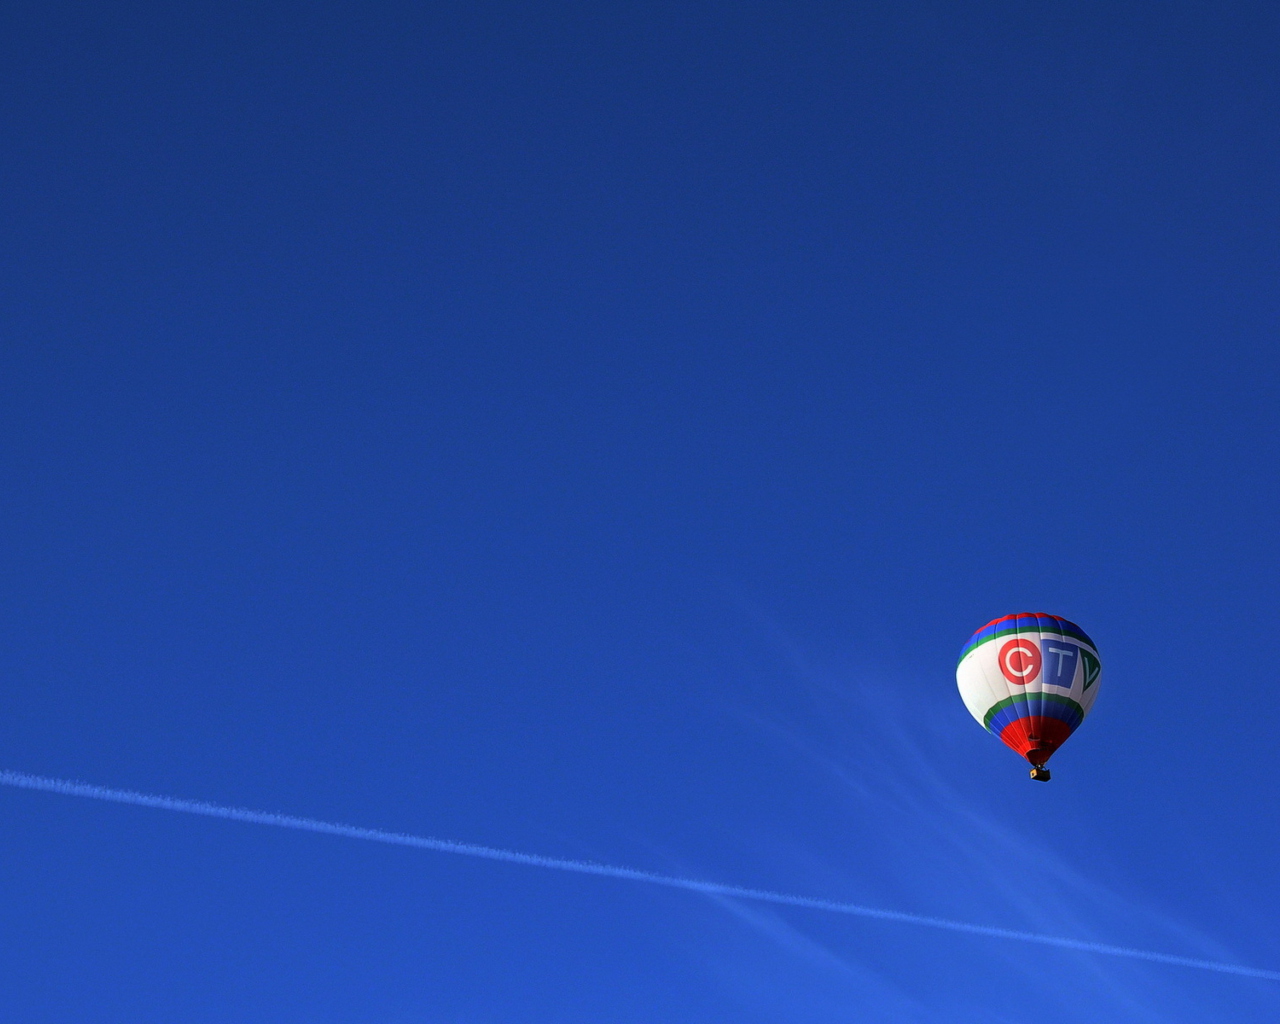 Balloon In Blue Sky wallpaper 1280x1024